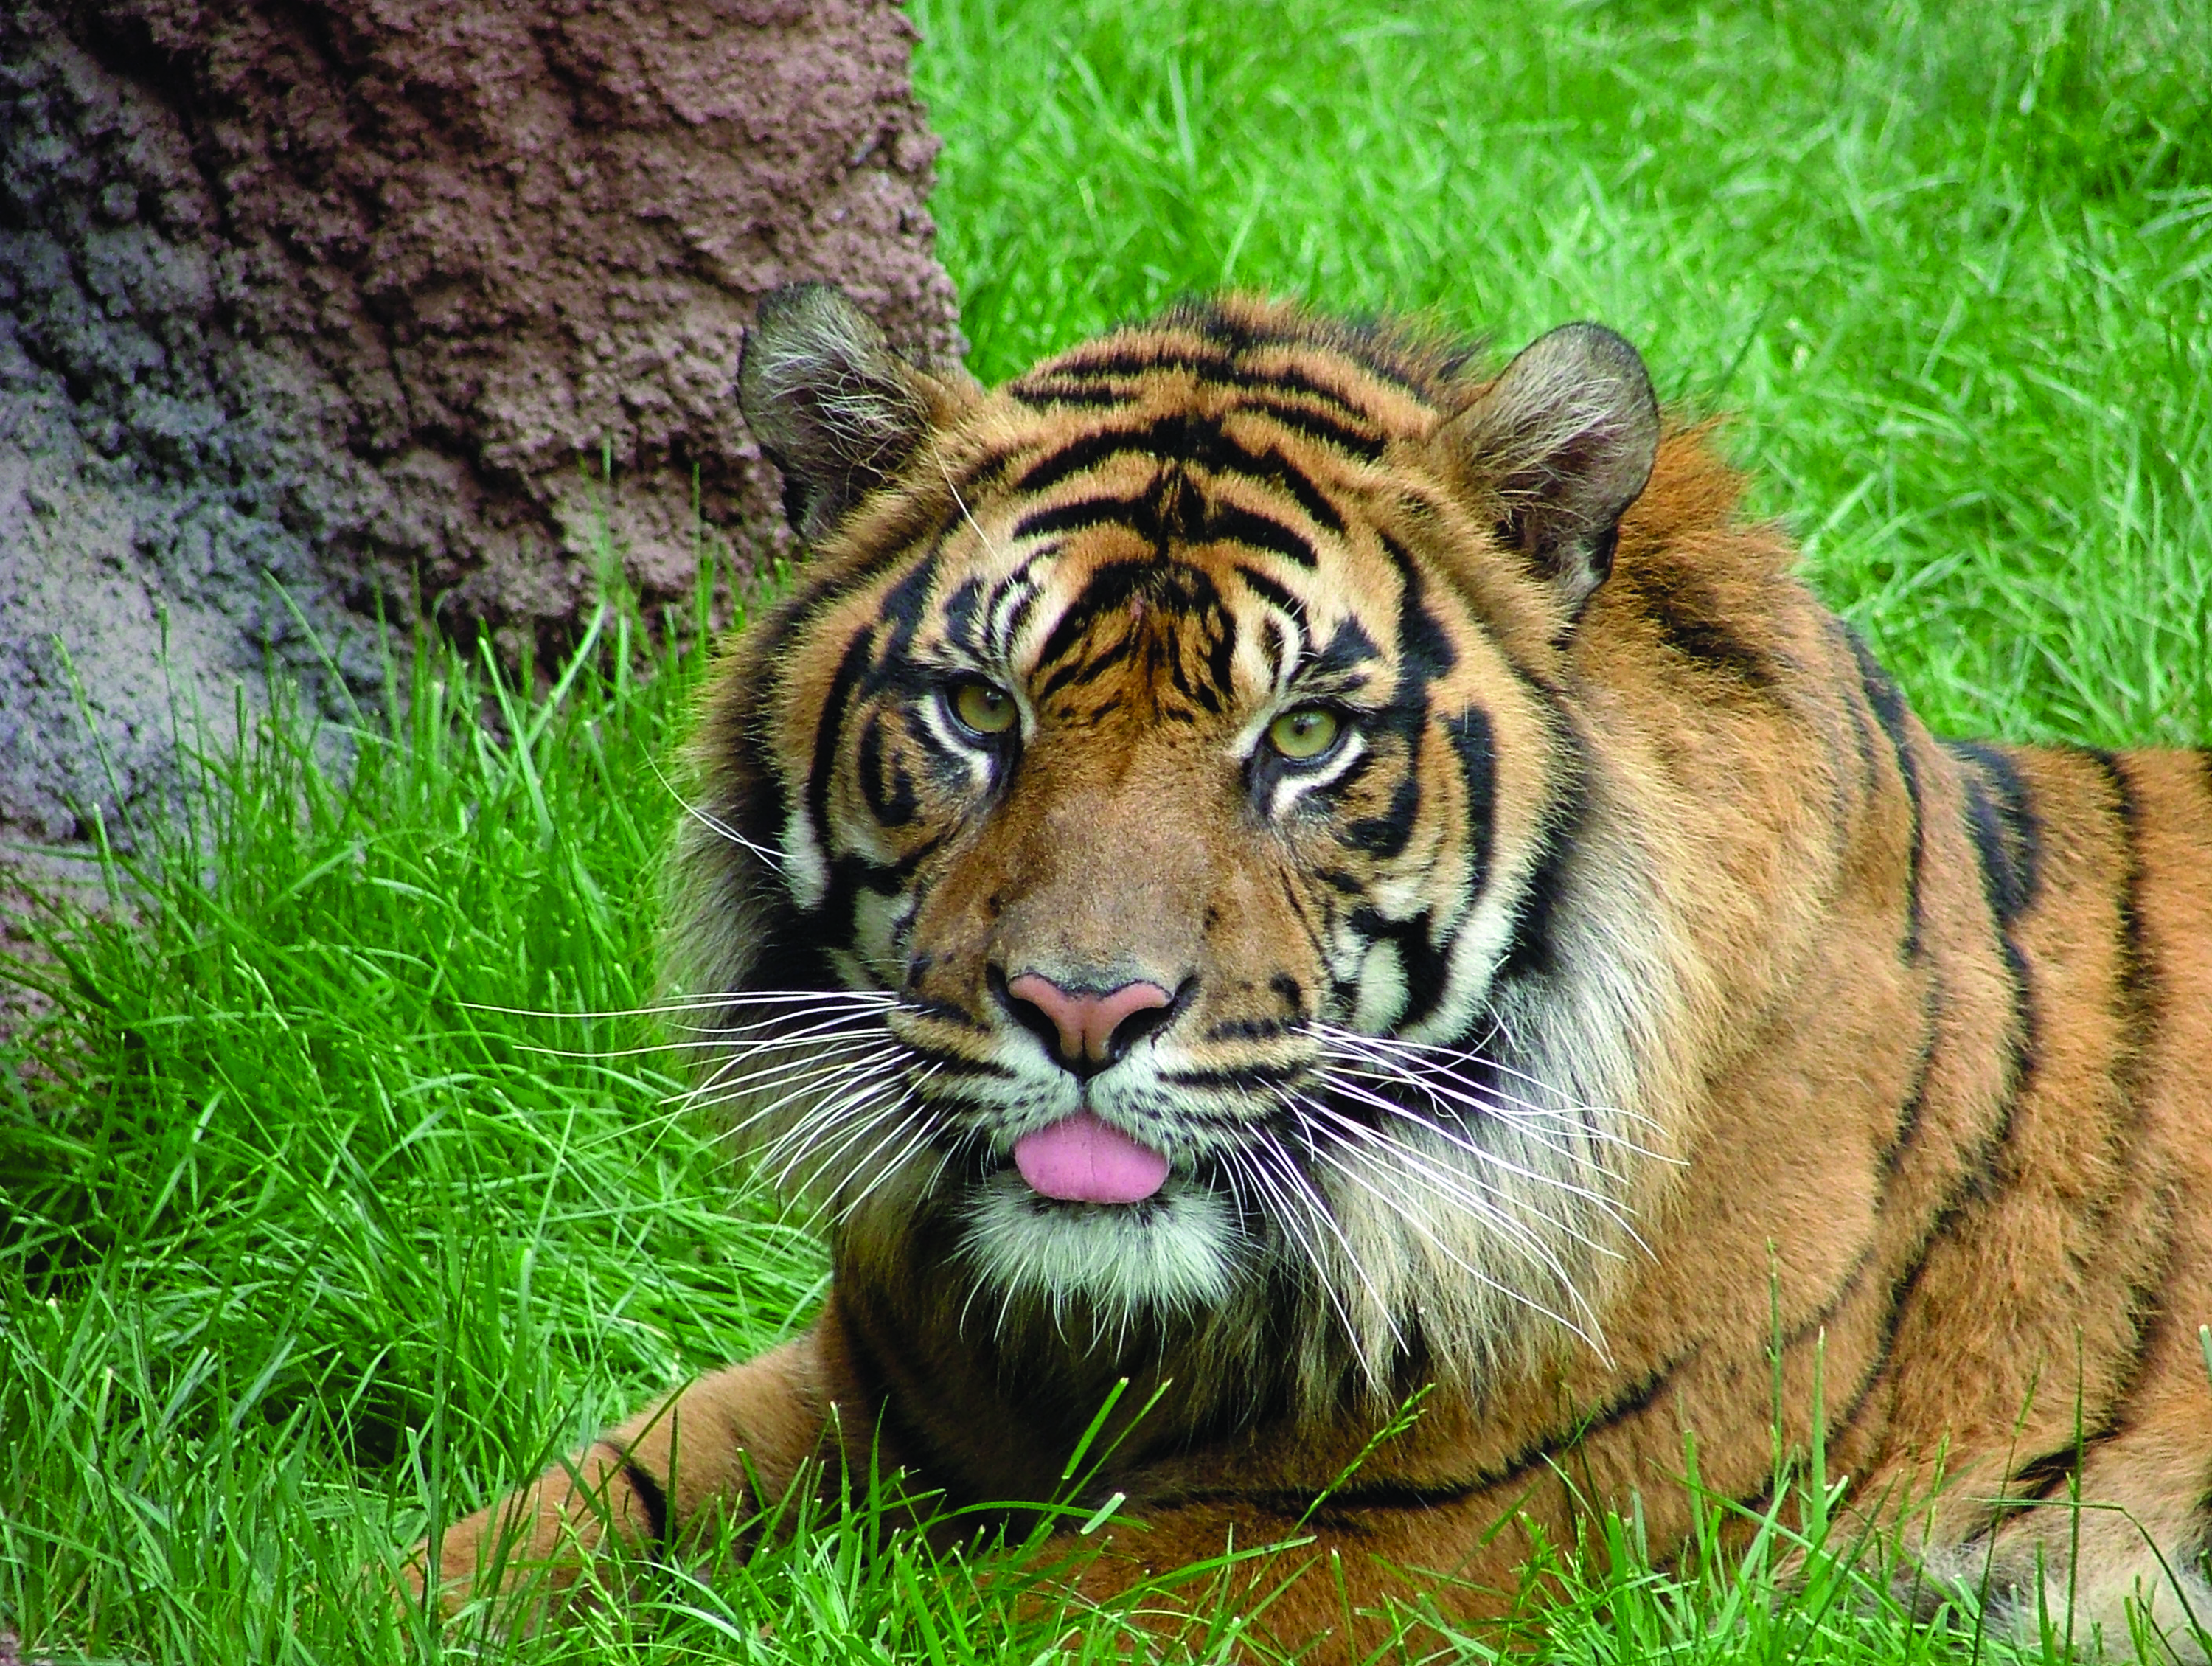 Tiger at Topeka Zoo